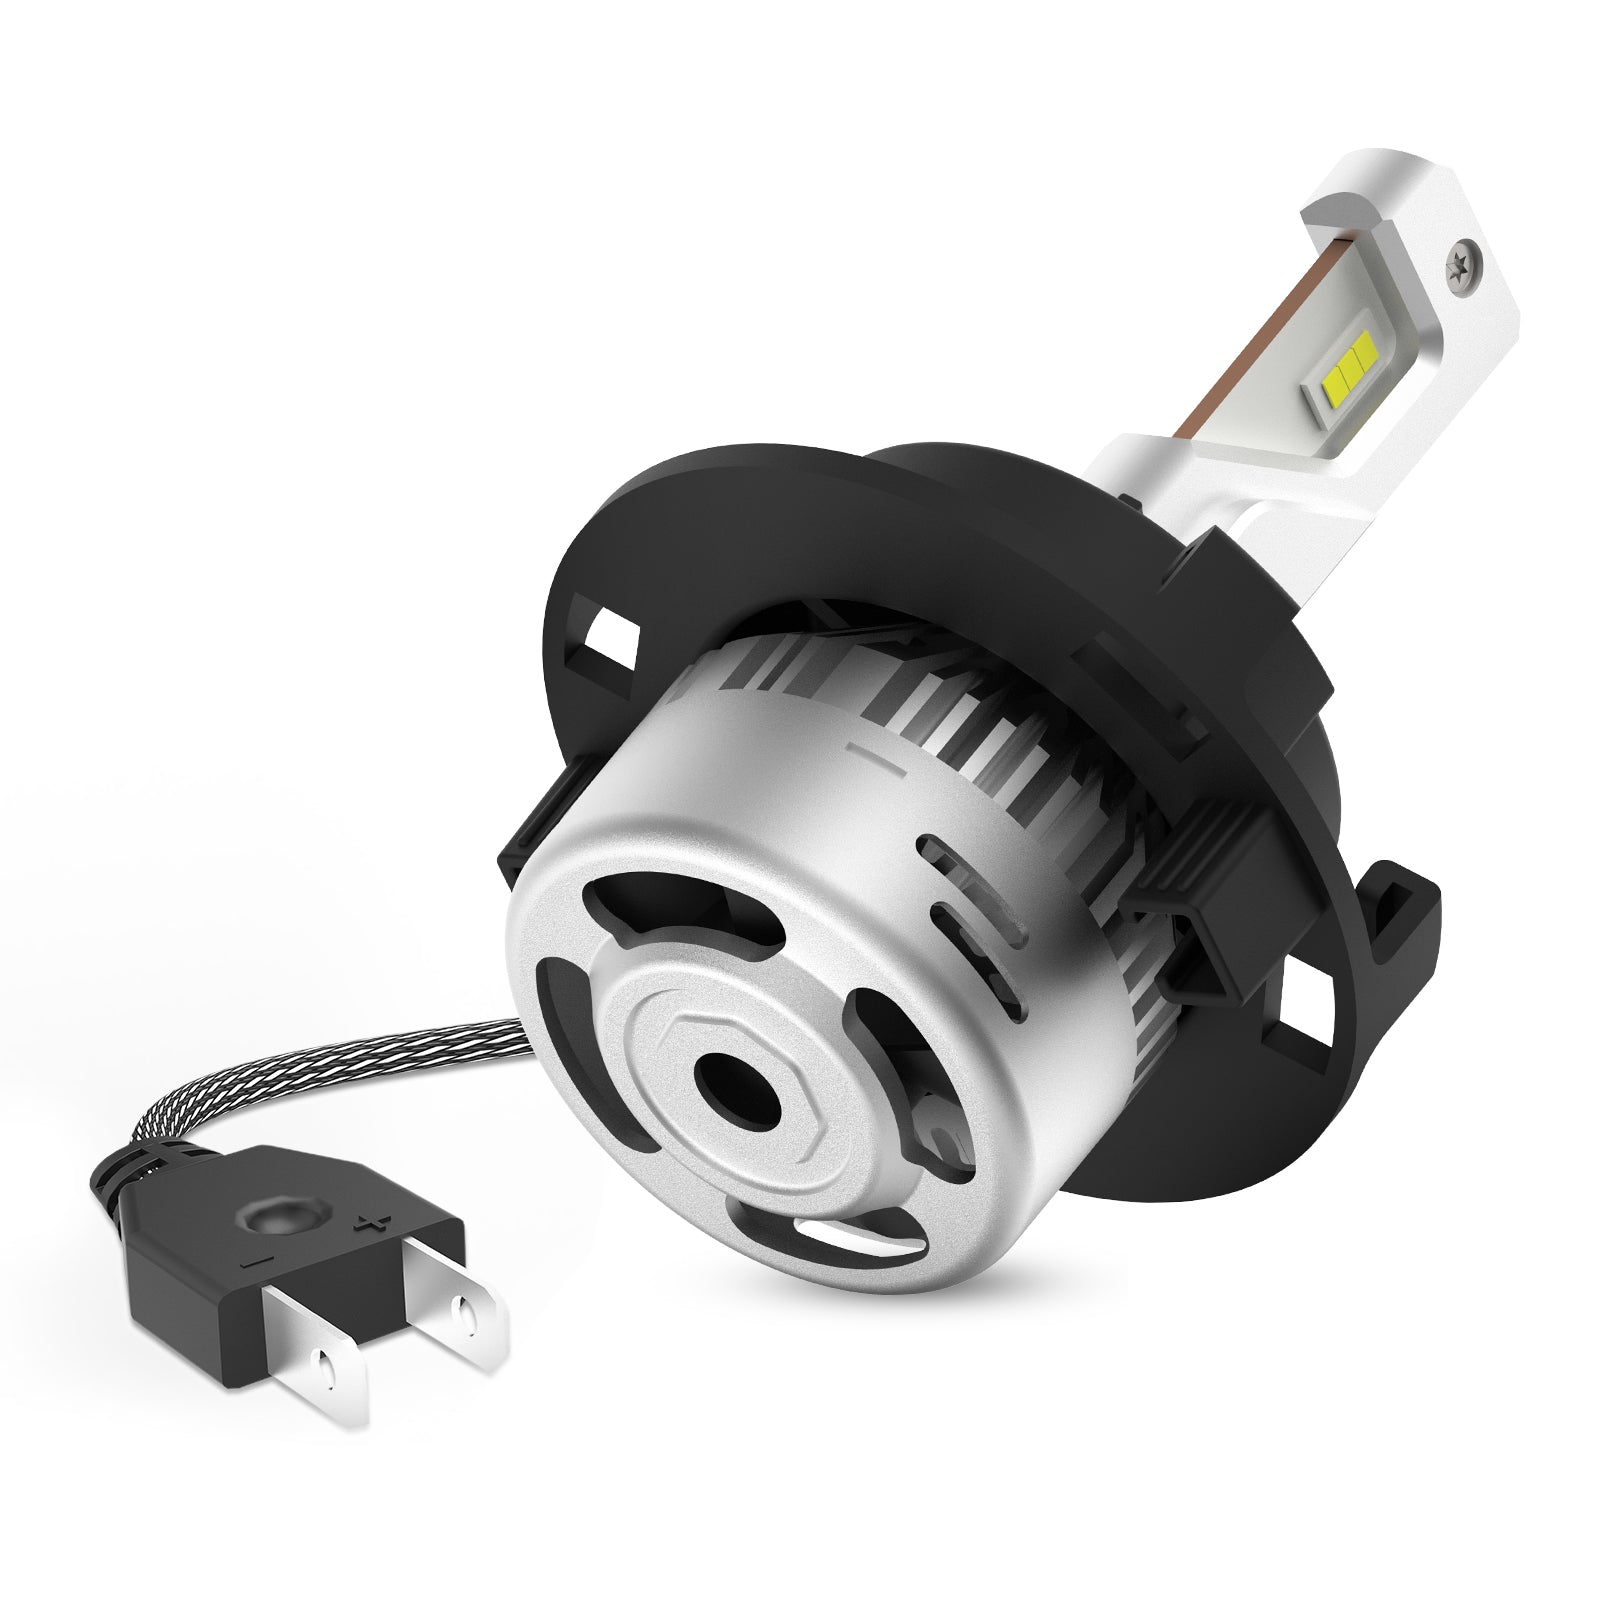 Custom H7/H15 LED Light Bulbs – Auxbeam Led Light